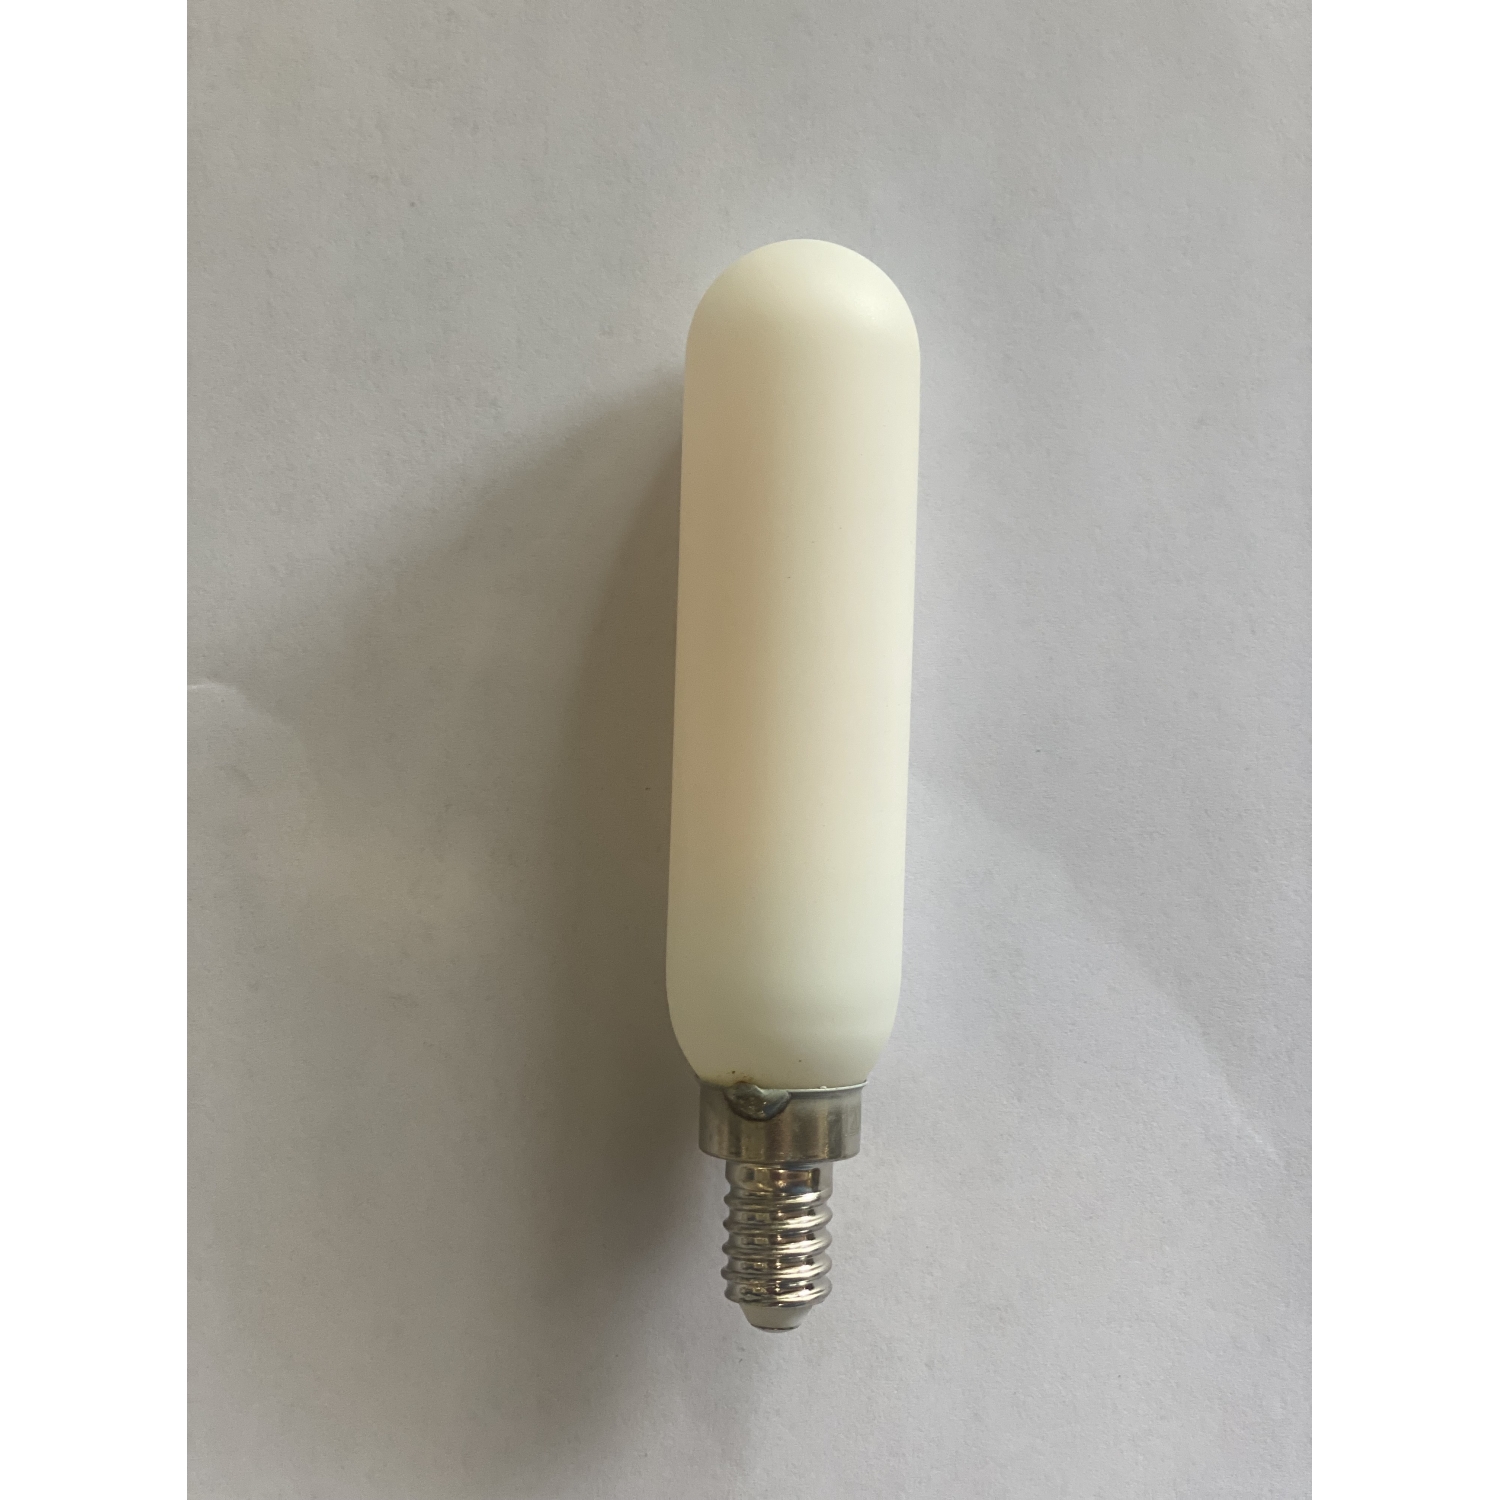 LED Light Bulb Tubes